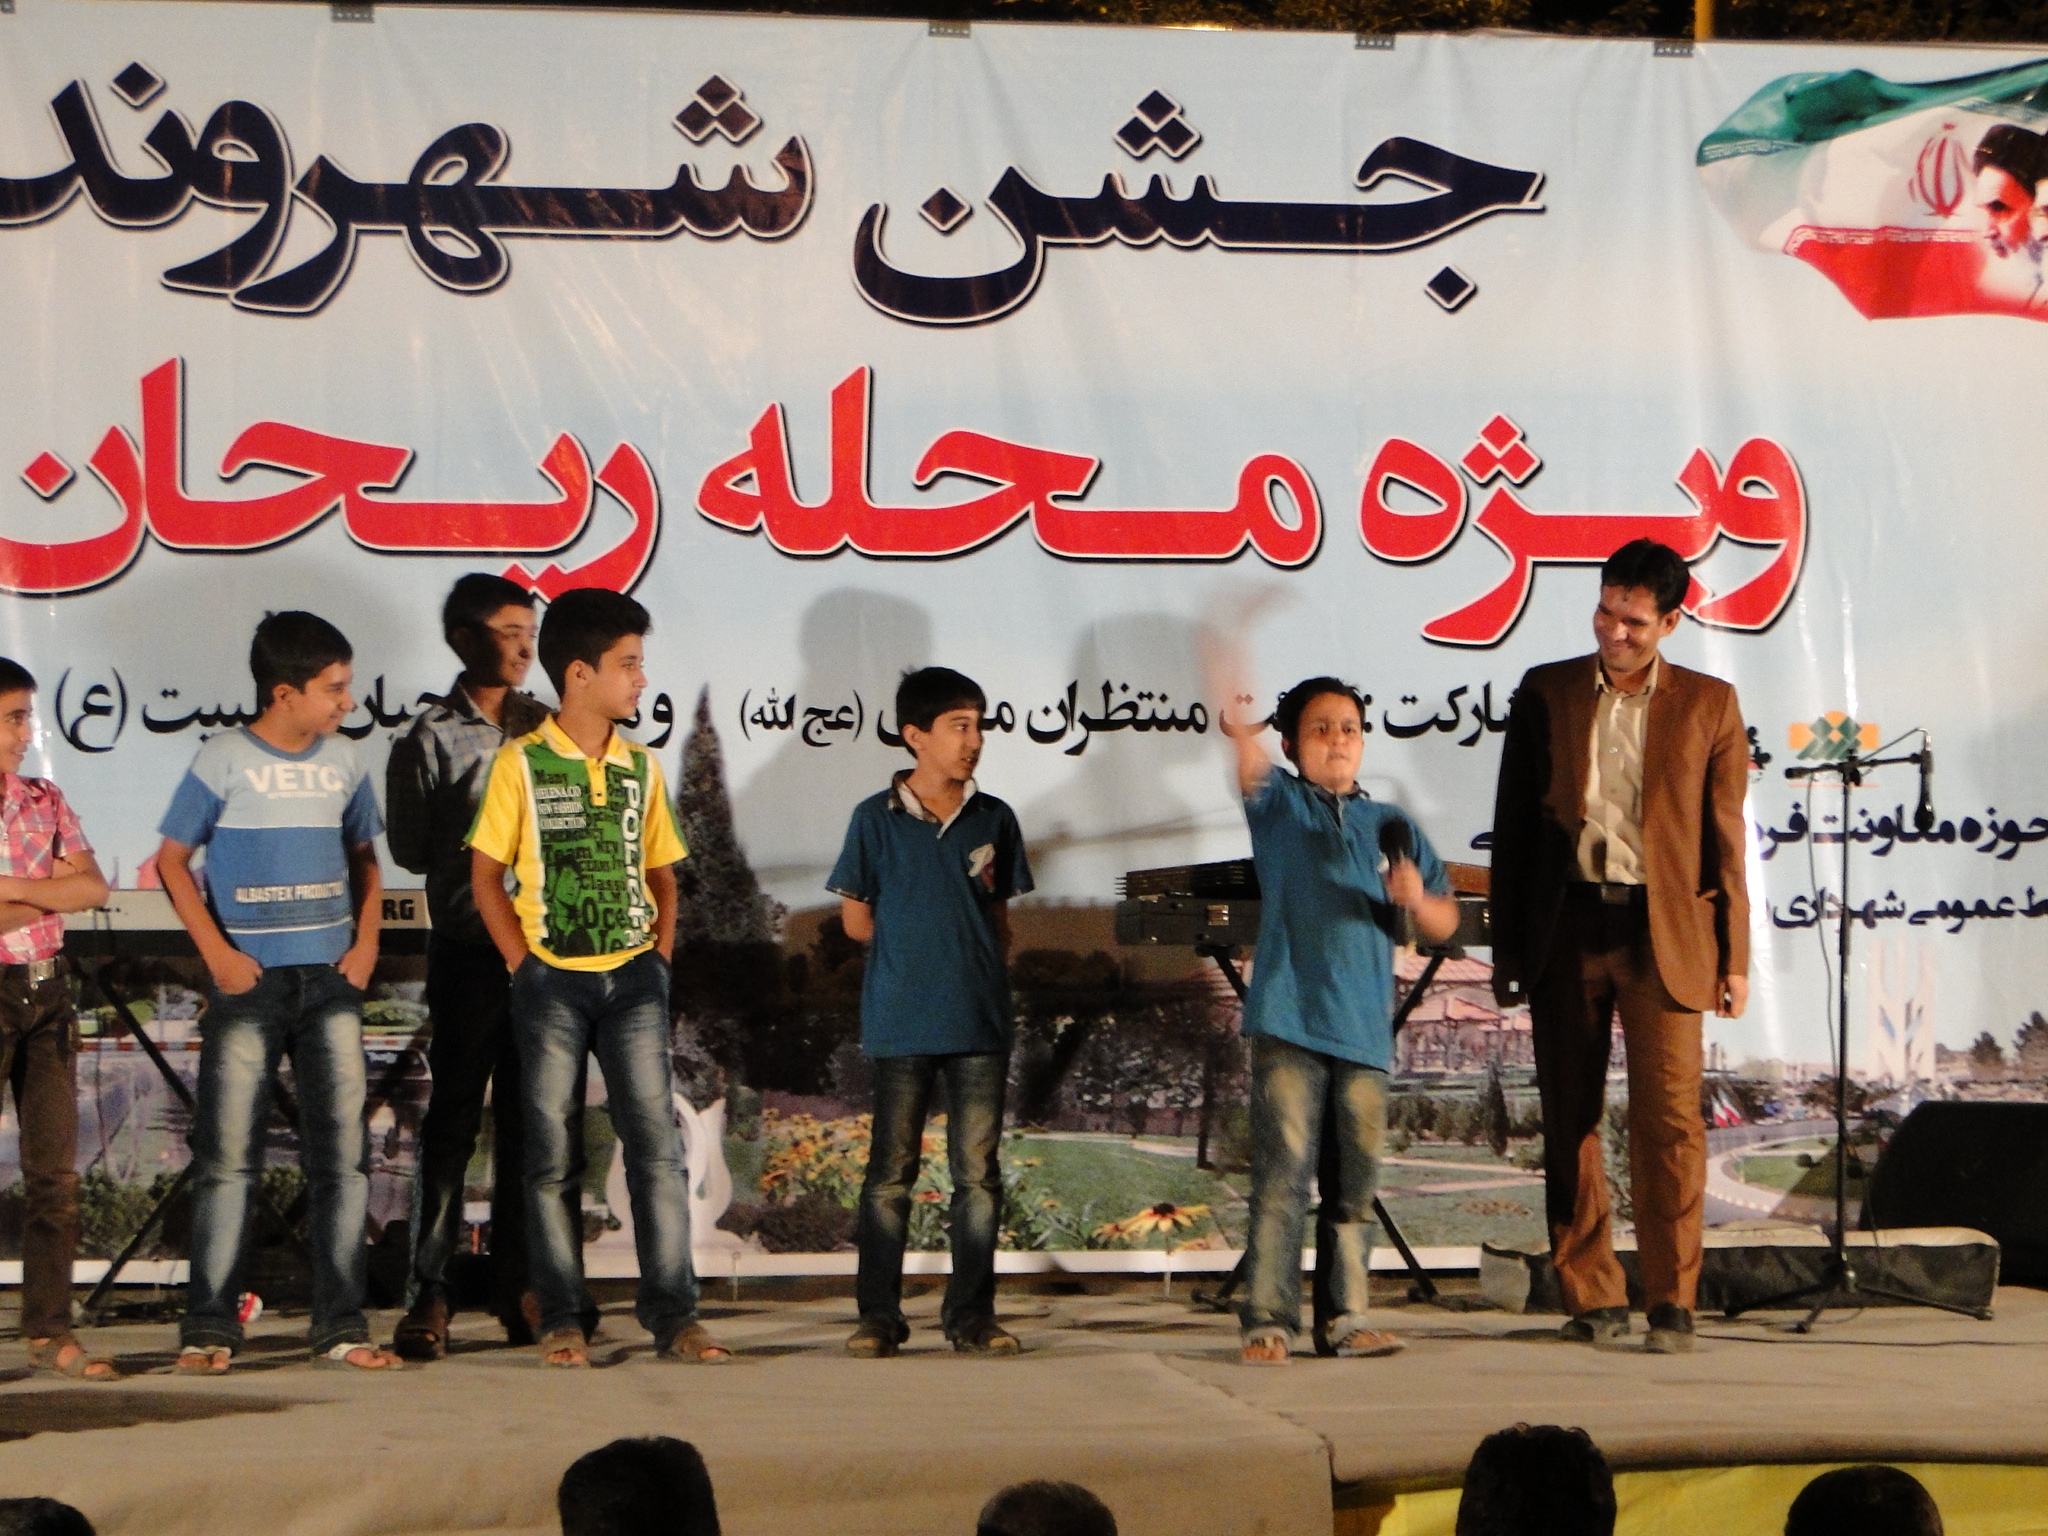 جشن شهروند در محله ریحان زرند (+تصاویر)